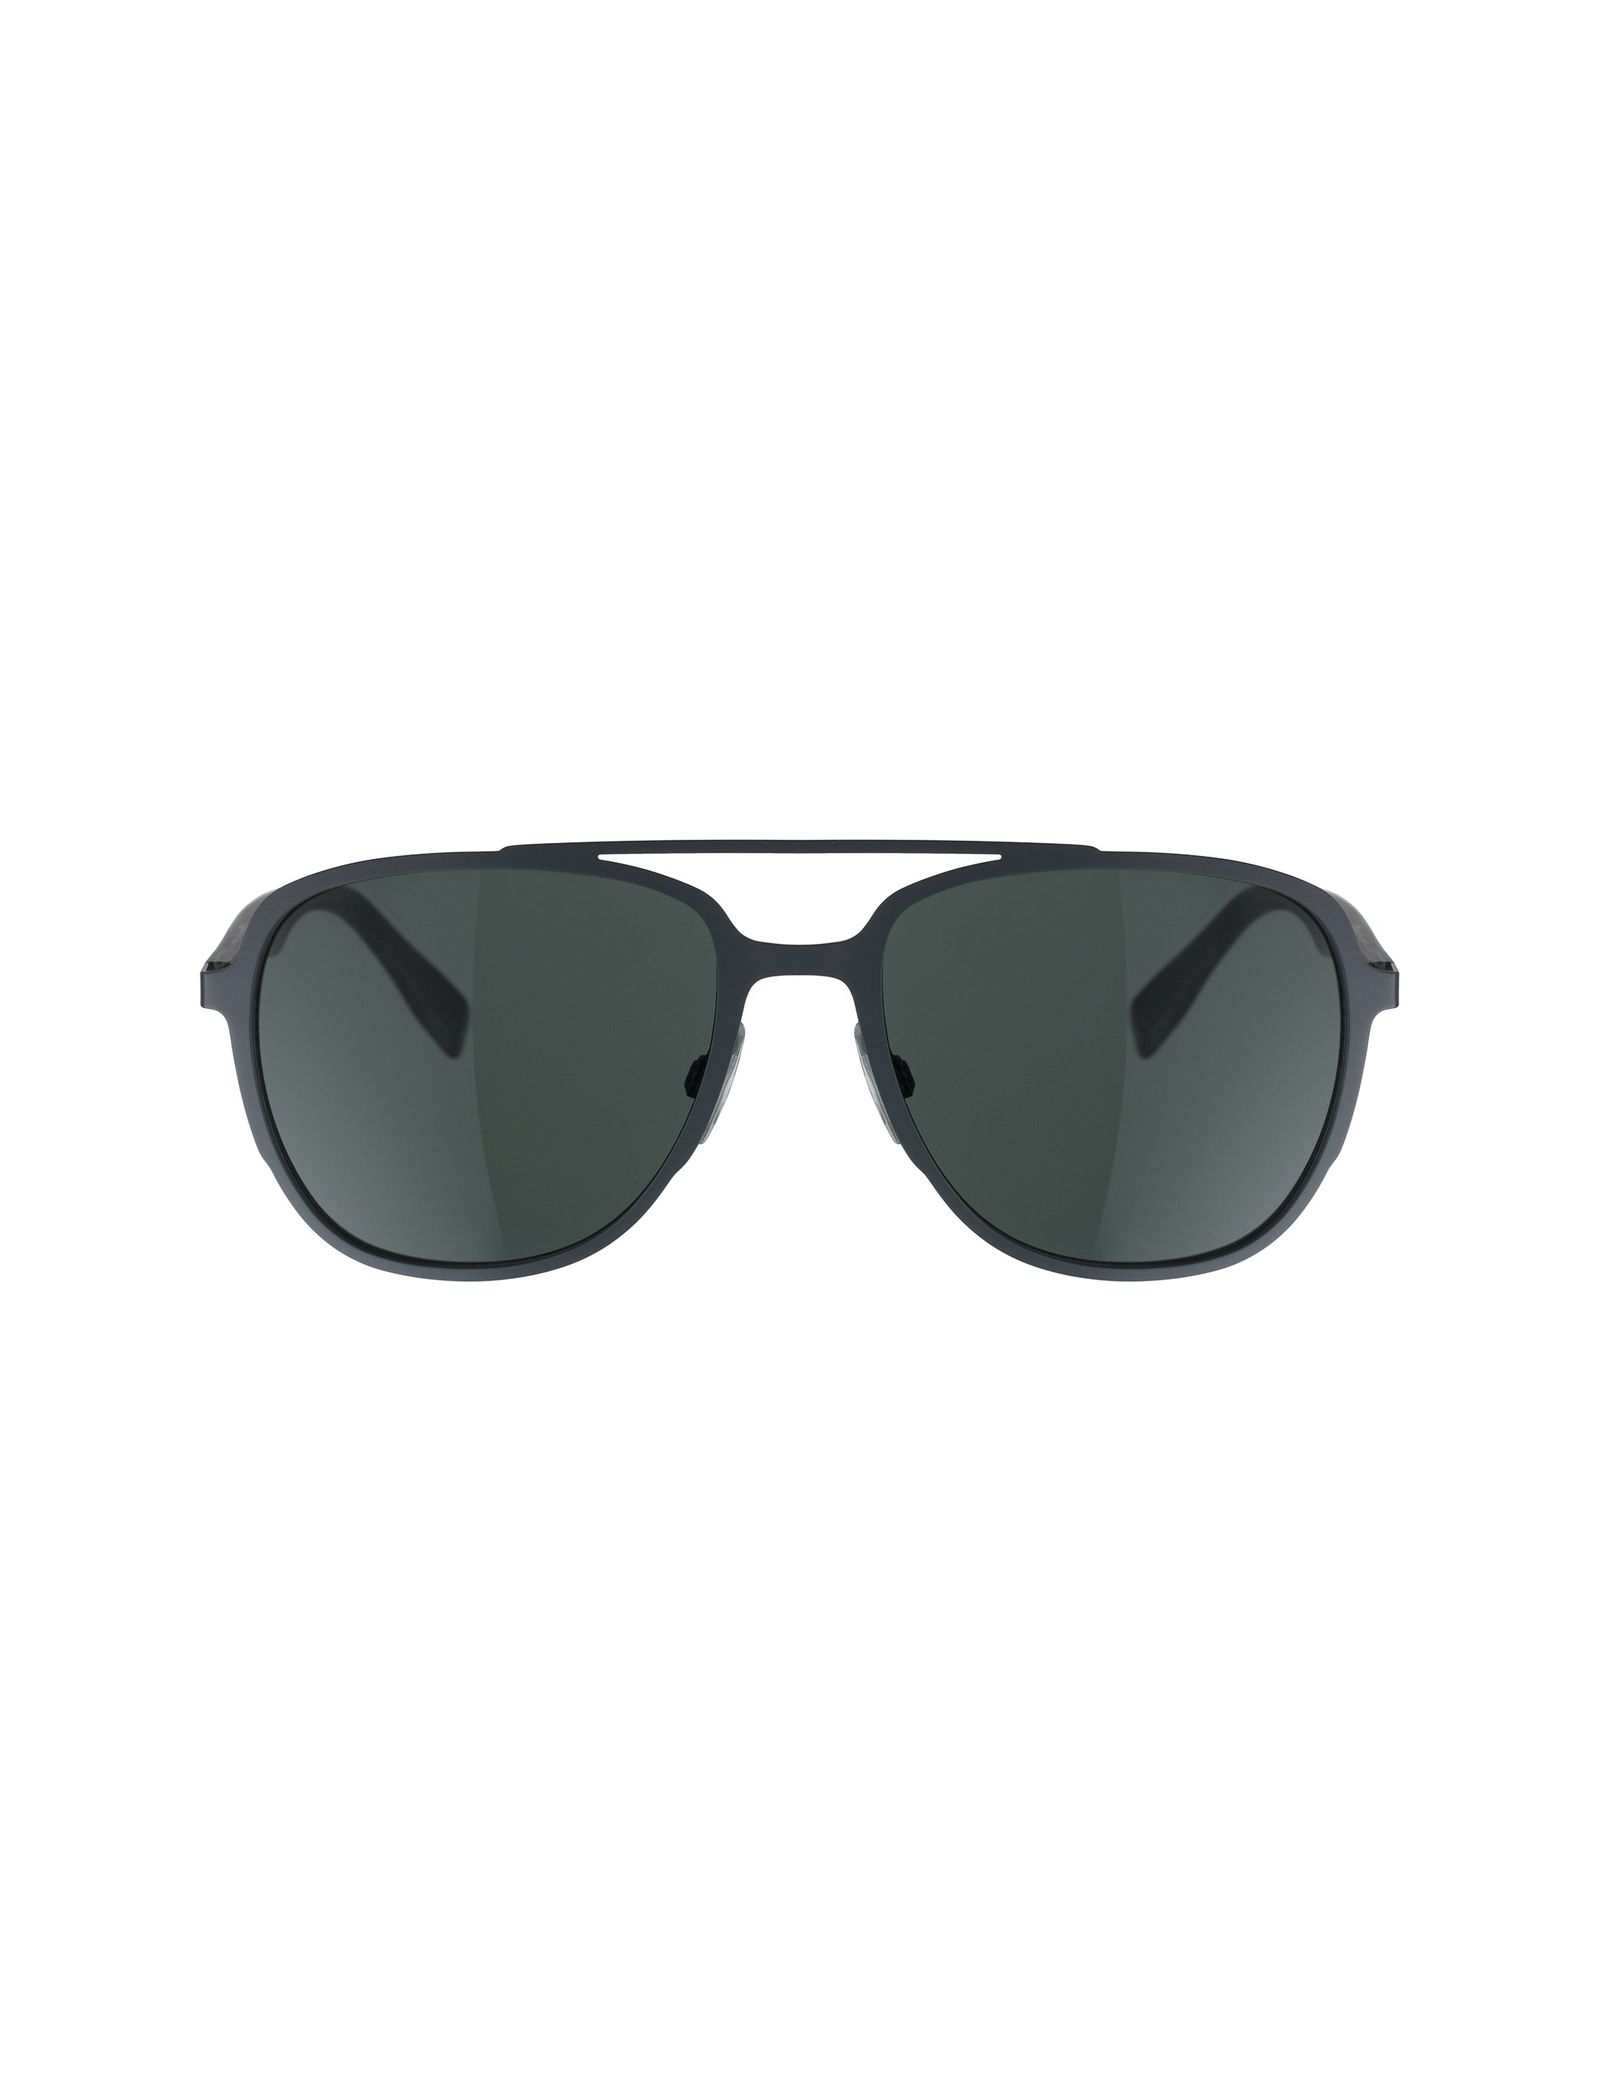 عینک آفتابی خلبانی مردانه - باس اورنج - سبز - 1